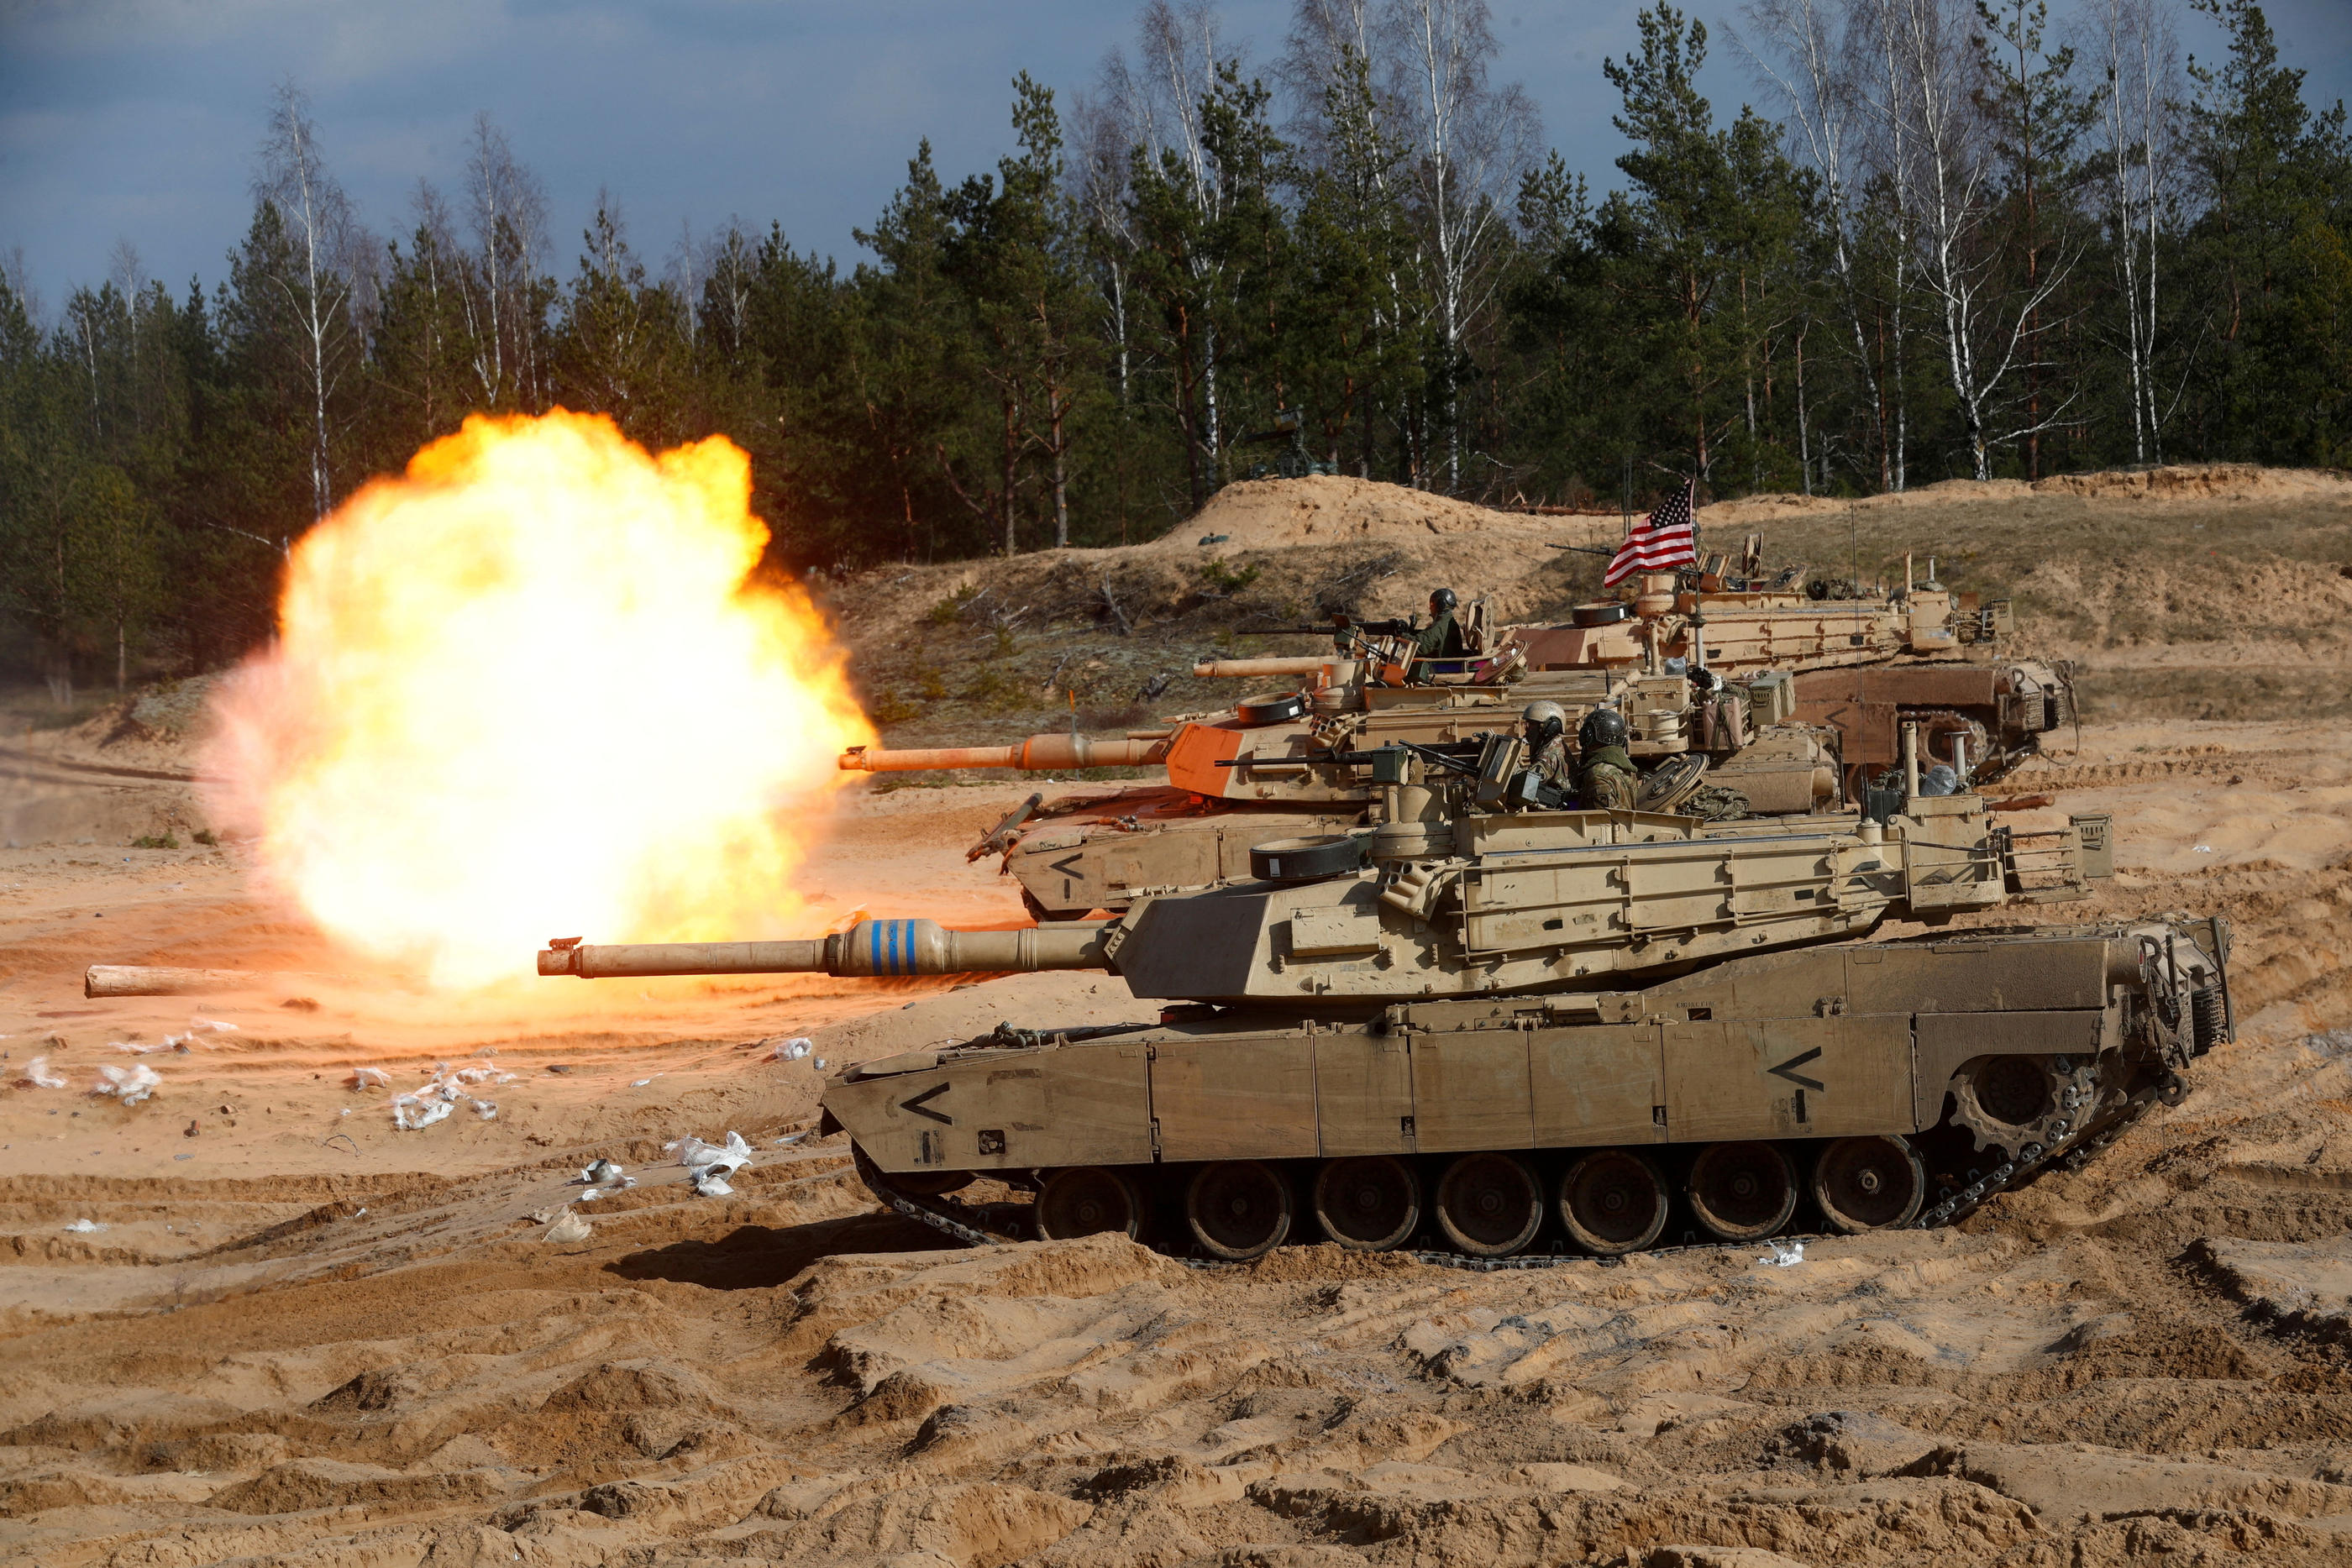 Équipés de munitions à l'uranium appauvri, les M1A1 Abrams sont surtout efficaces contre d'autres blindés et pourraient se casser les chenilles sur les défenses russes. REUTERS/Ints Kalnins